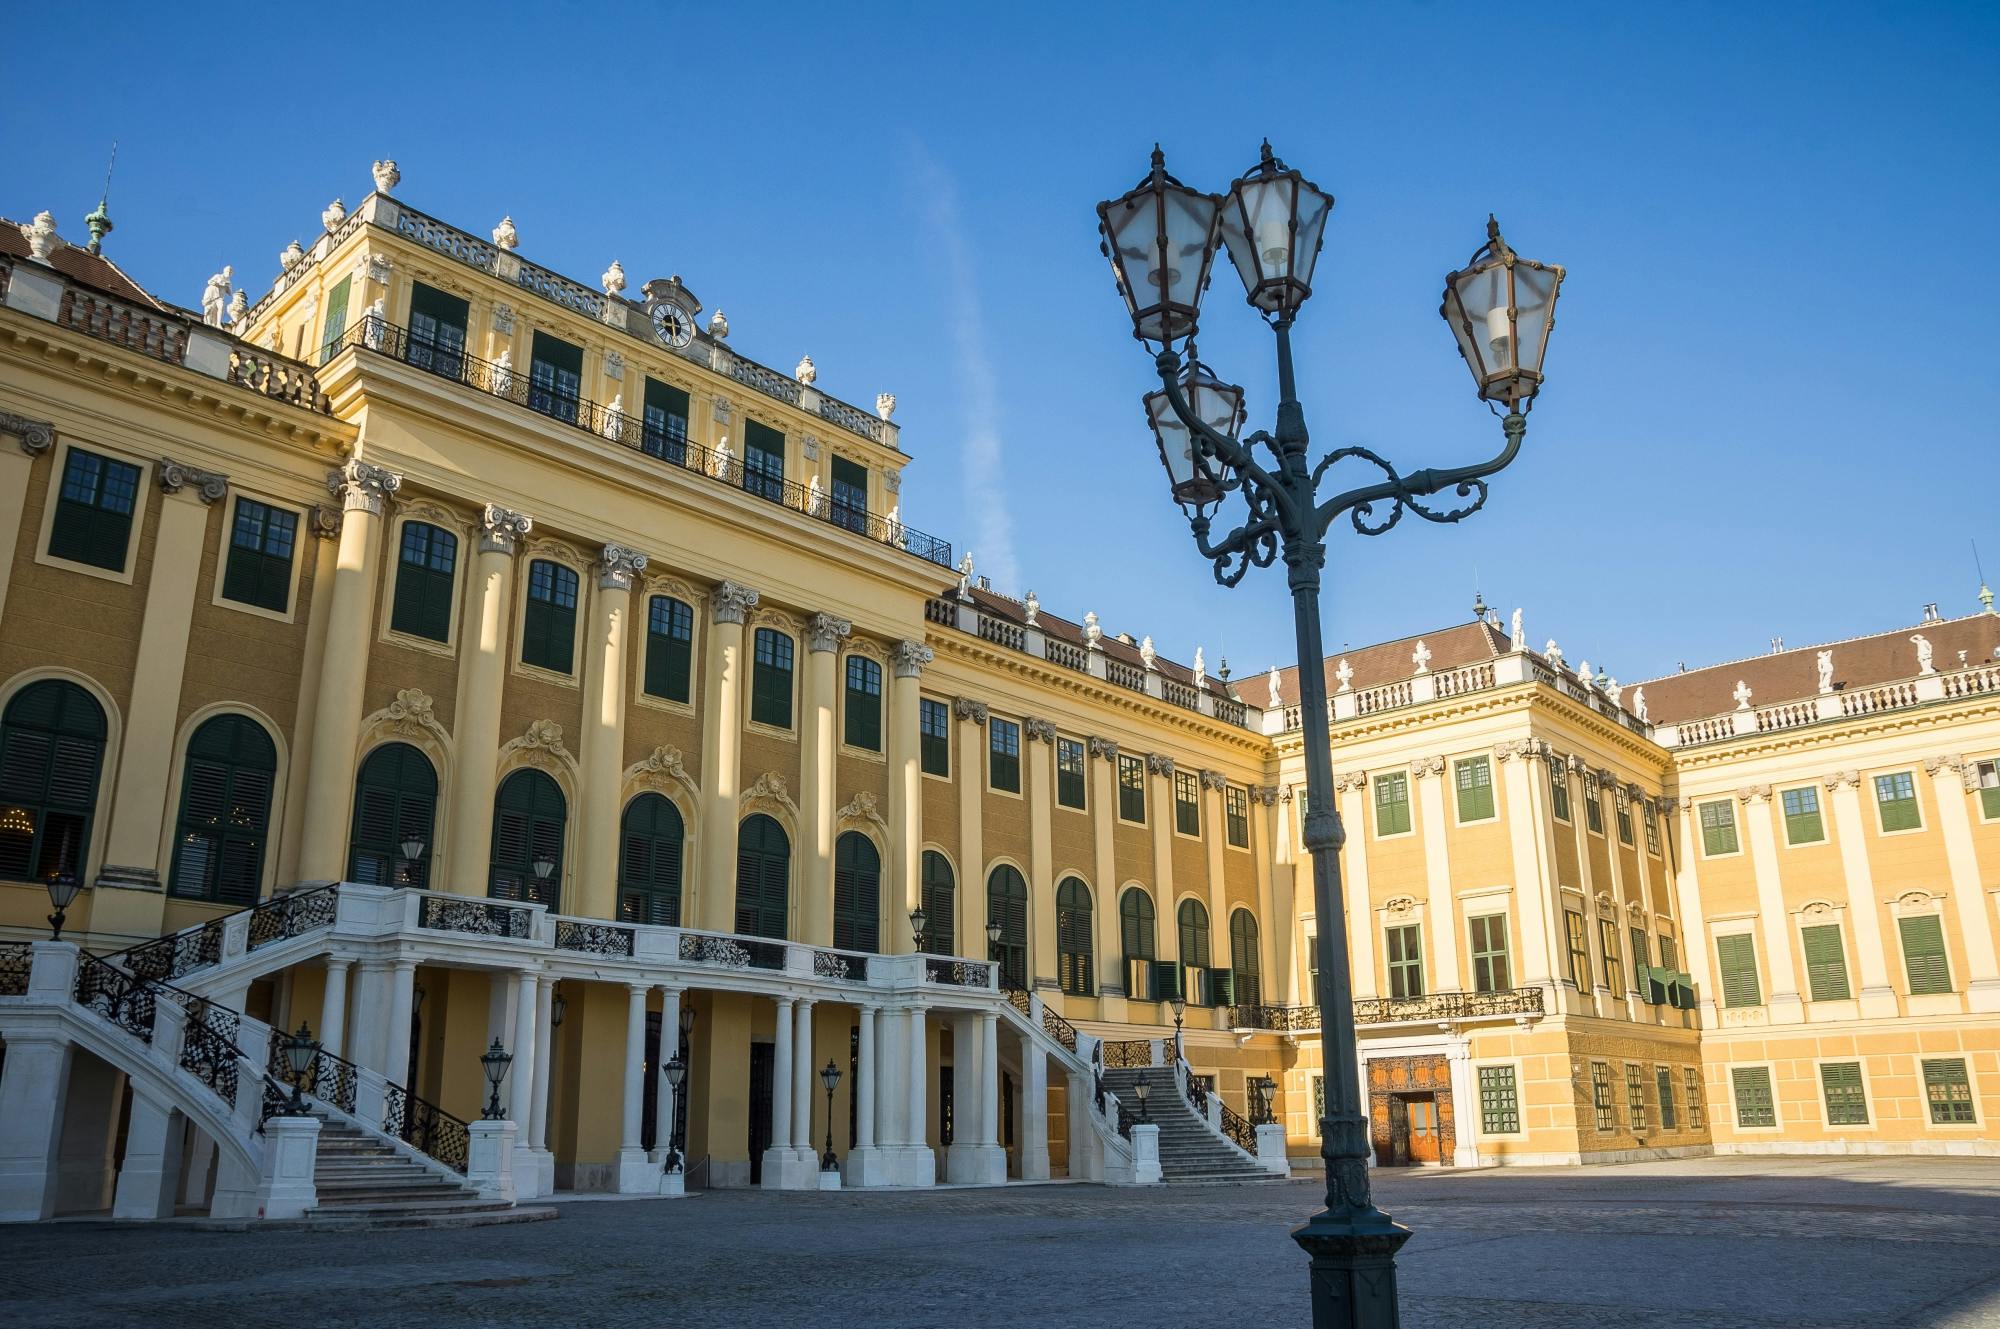 Velada en Schönbrunn: visita al palacio y concierto